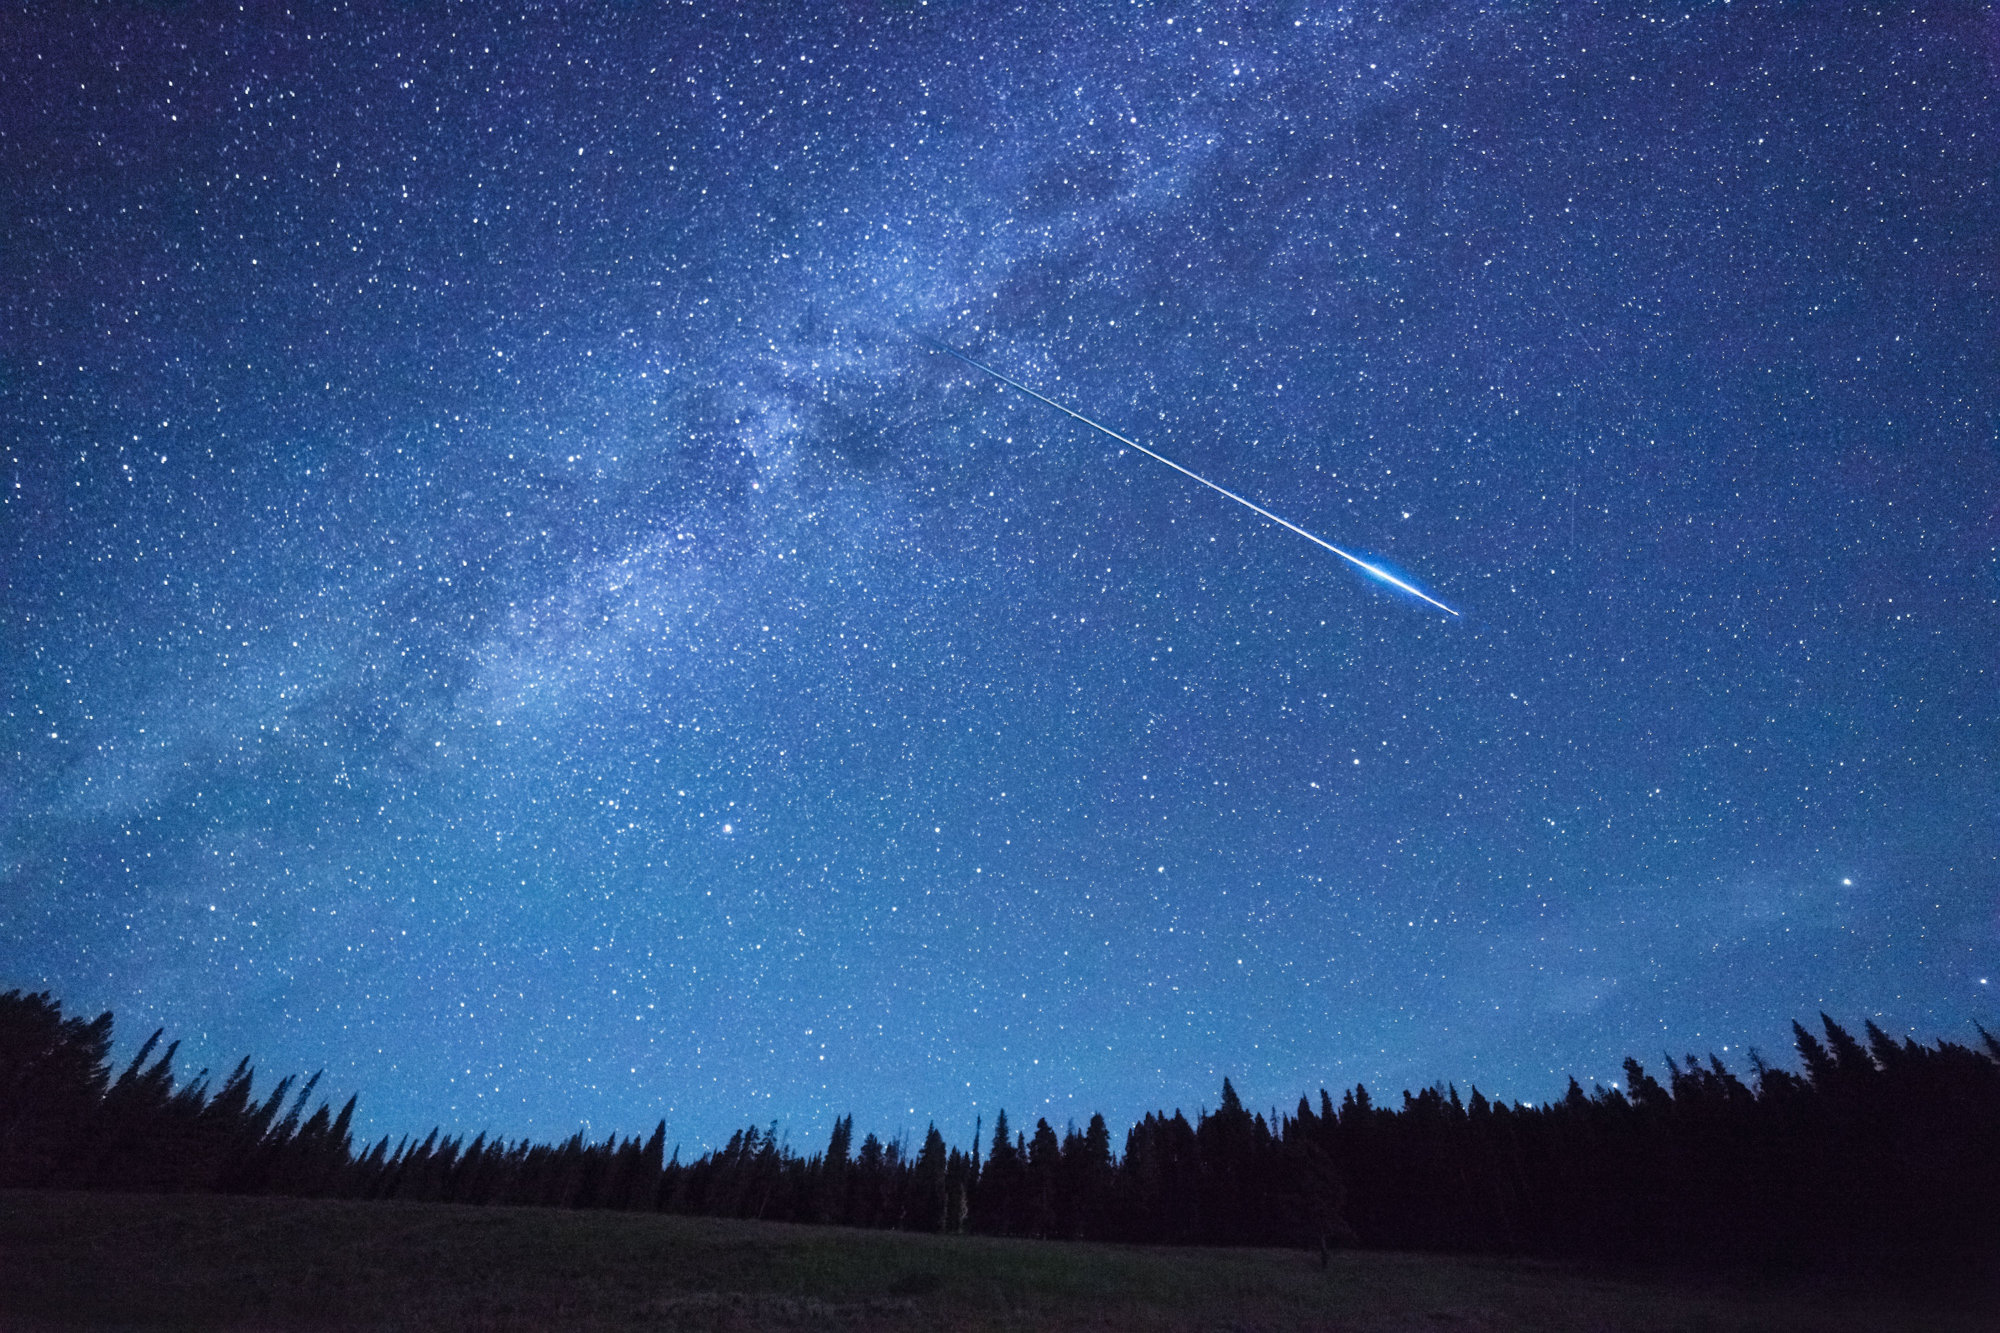 The Delta Aquariid meteor shower begins its peak this weekend